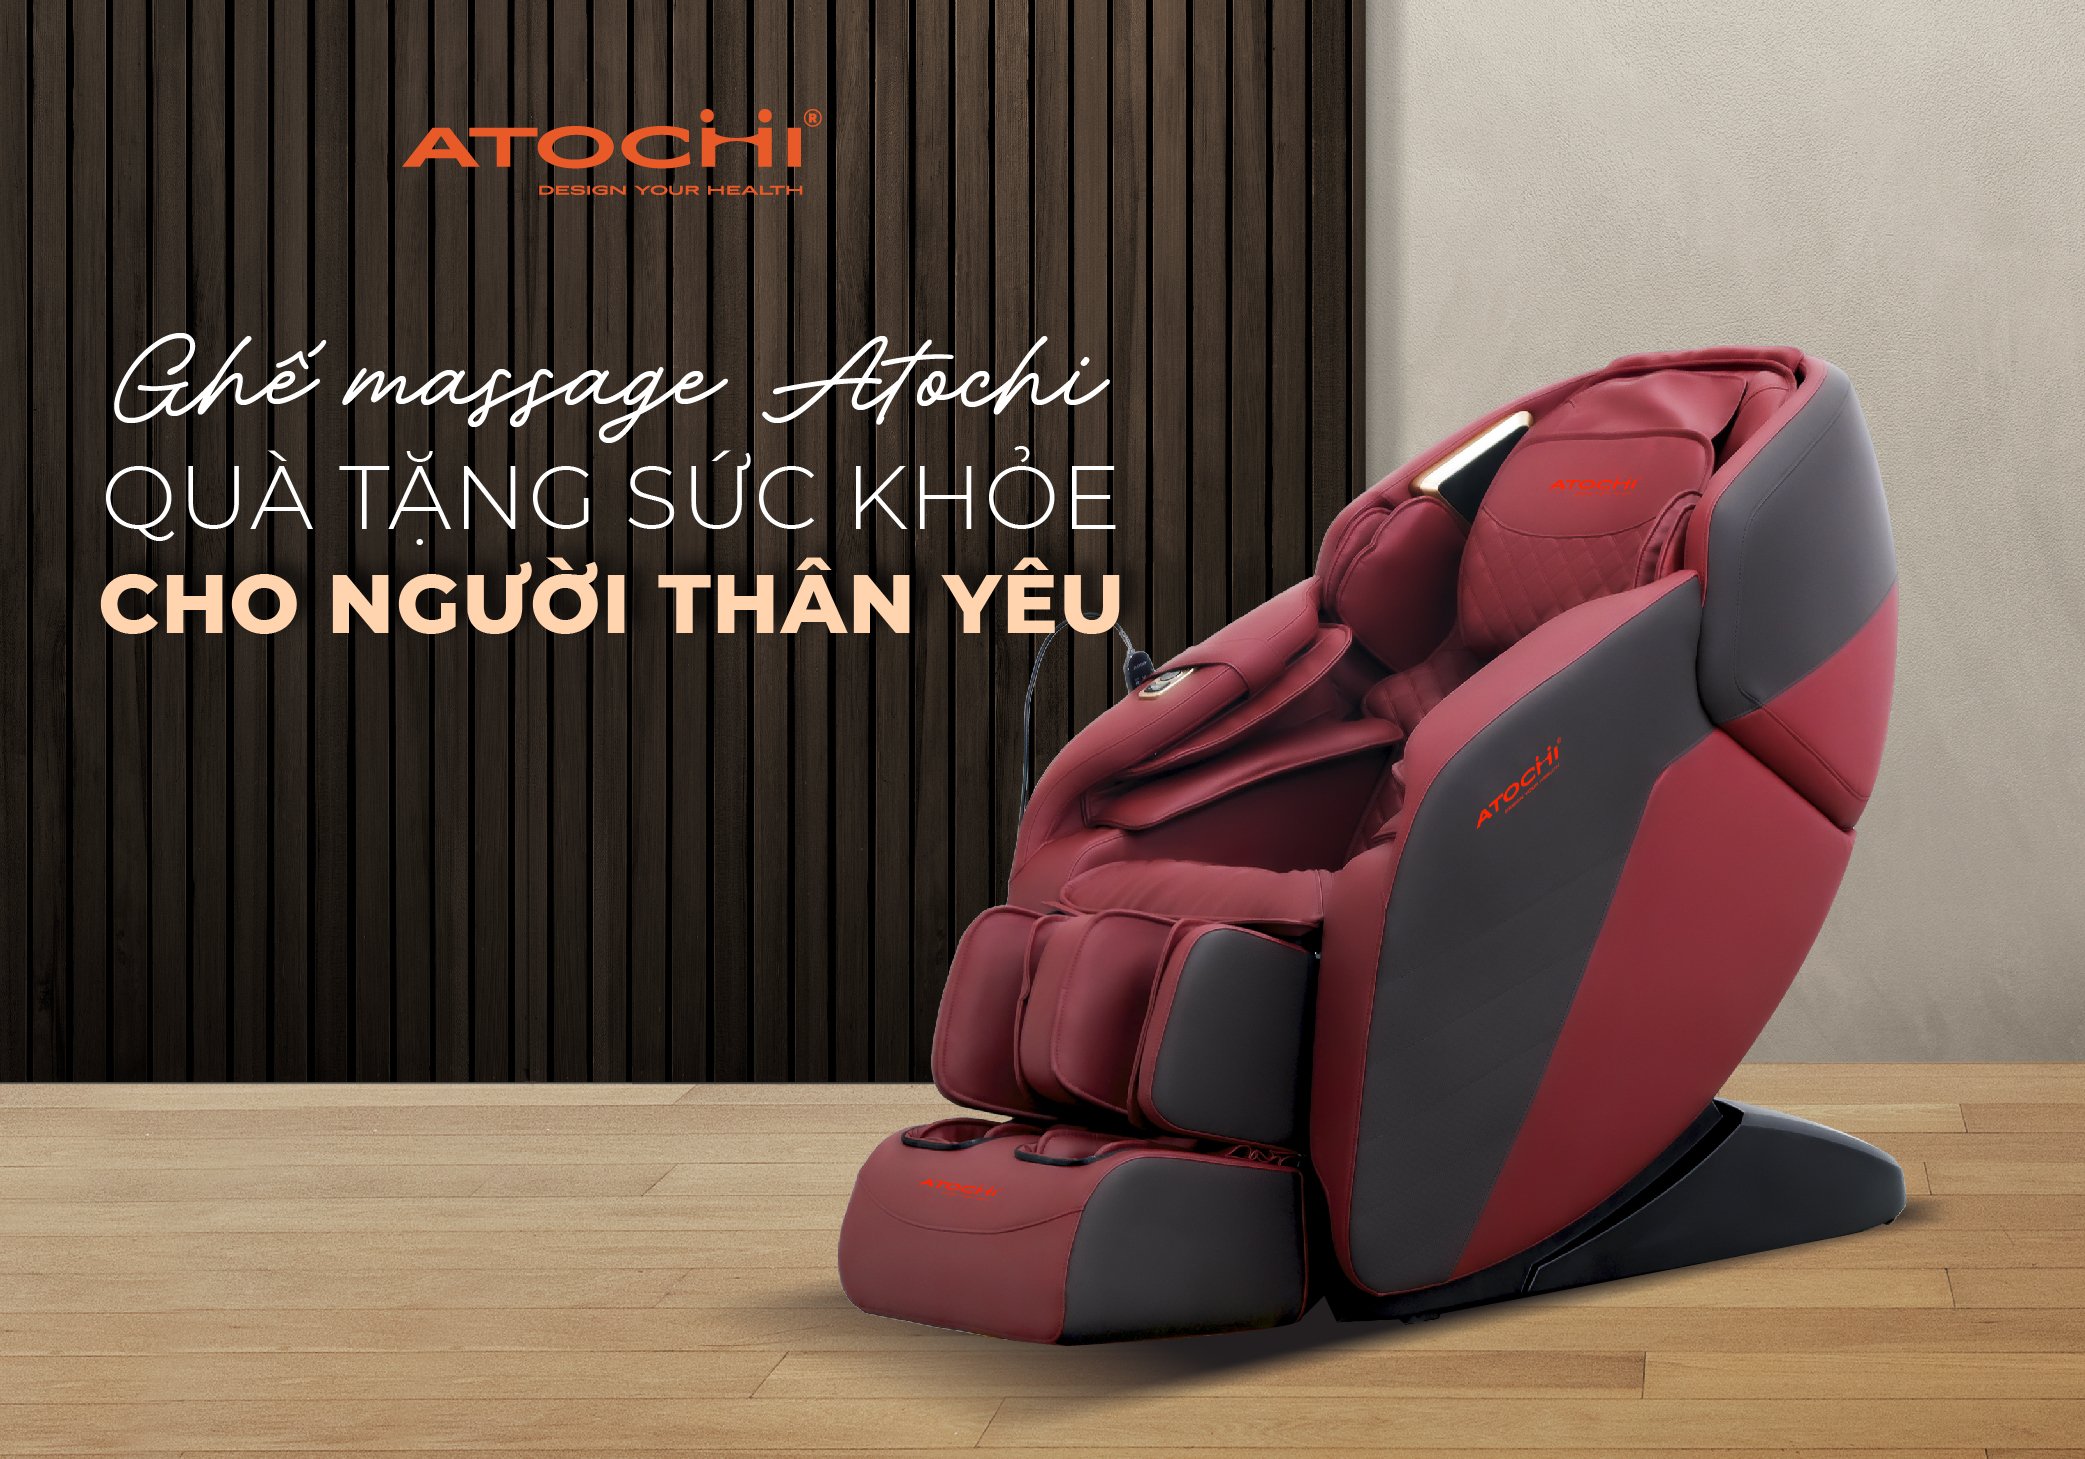 Atochi - thương hiệu ghế massage được tin tưởng sử dụng 